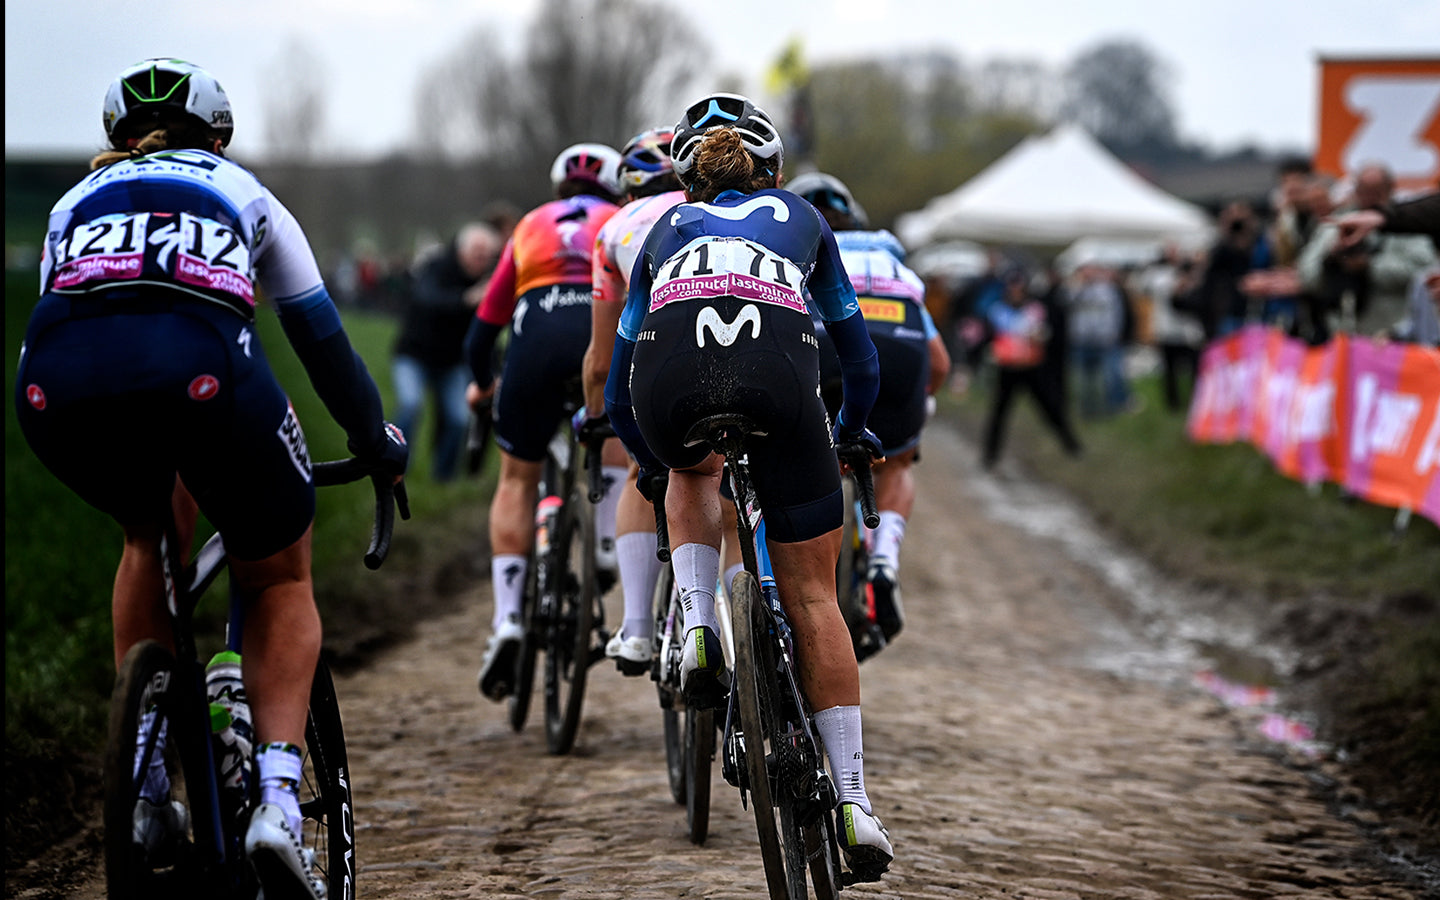 De espaldas, con el dorsal 71, ciclista del Movistar Team femenino atravesando una de las zonas de pavé características de la prueba París-Roubaix.